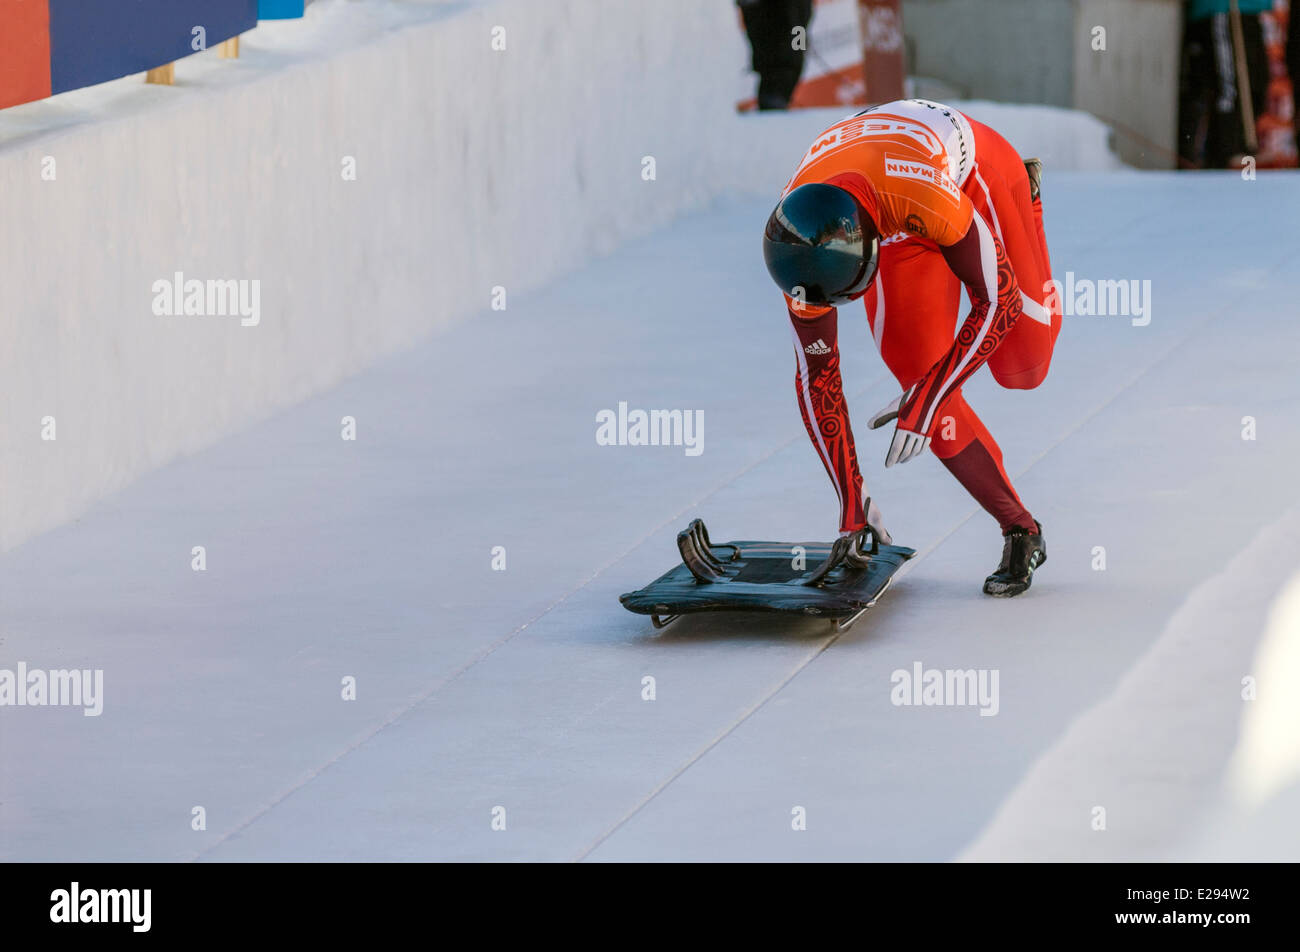 Cavalier squelette durant la Coupe du monde à l'Olympia Bob Run, St Moritz, Suisse. Banque D'Images